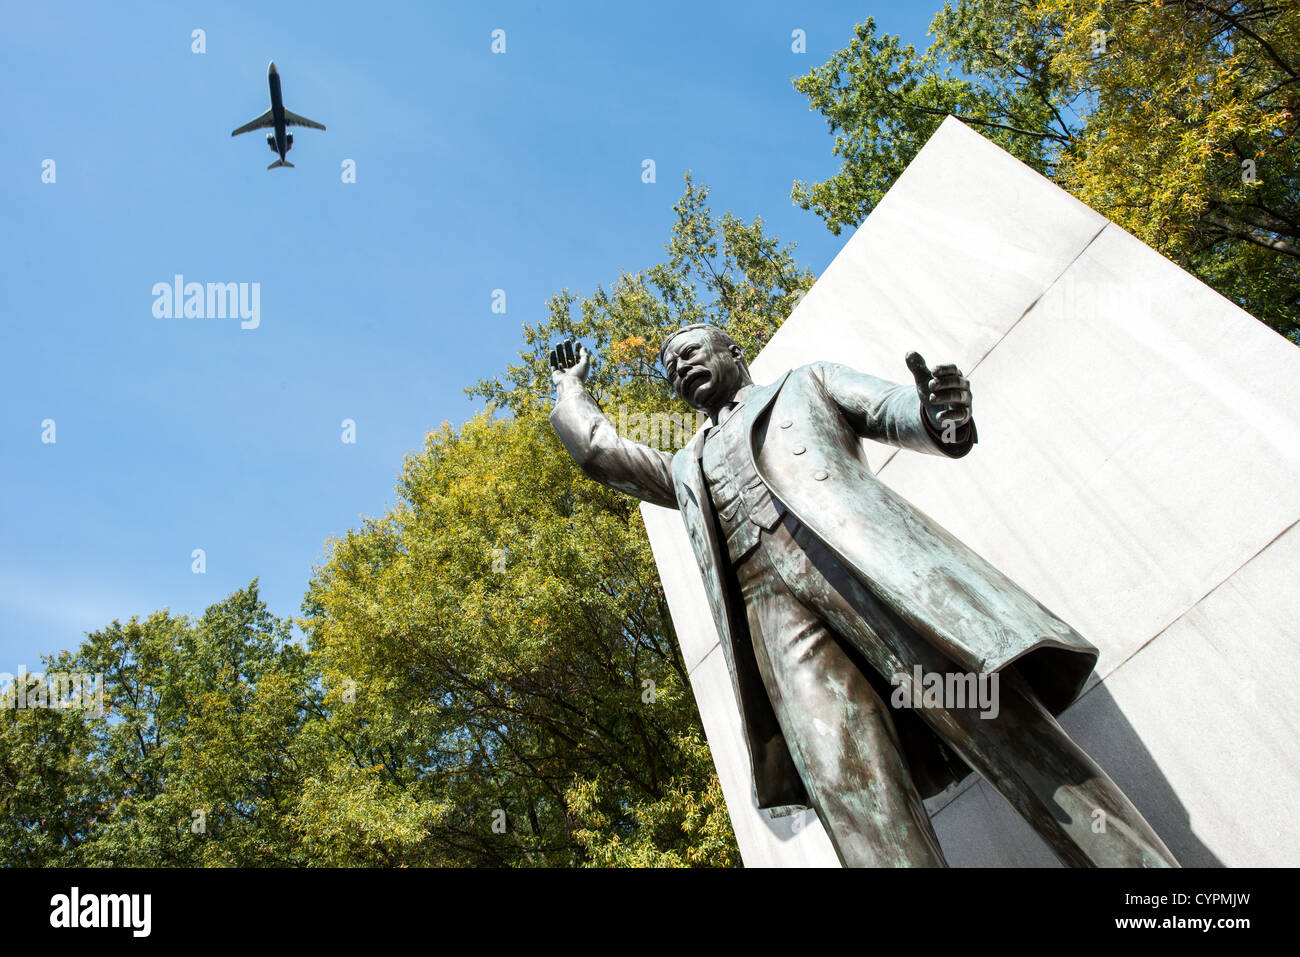 Statue von Amerikas 26. Präsident Theodore Roosevelt Memorial. Oben links kommt ein Flugzeug zu landen auf der nahe gelegenen Reagan National Airport. Stockfoto